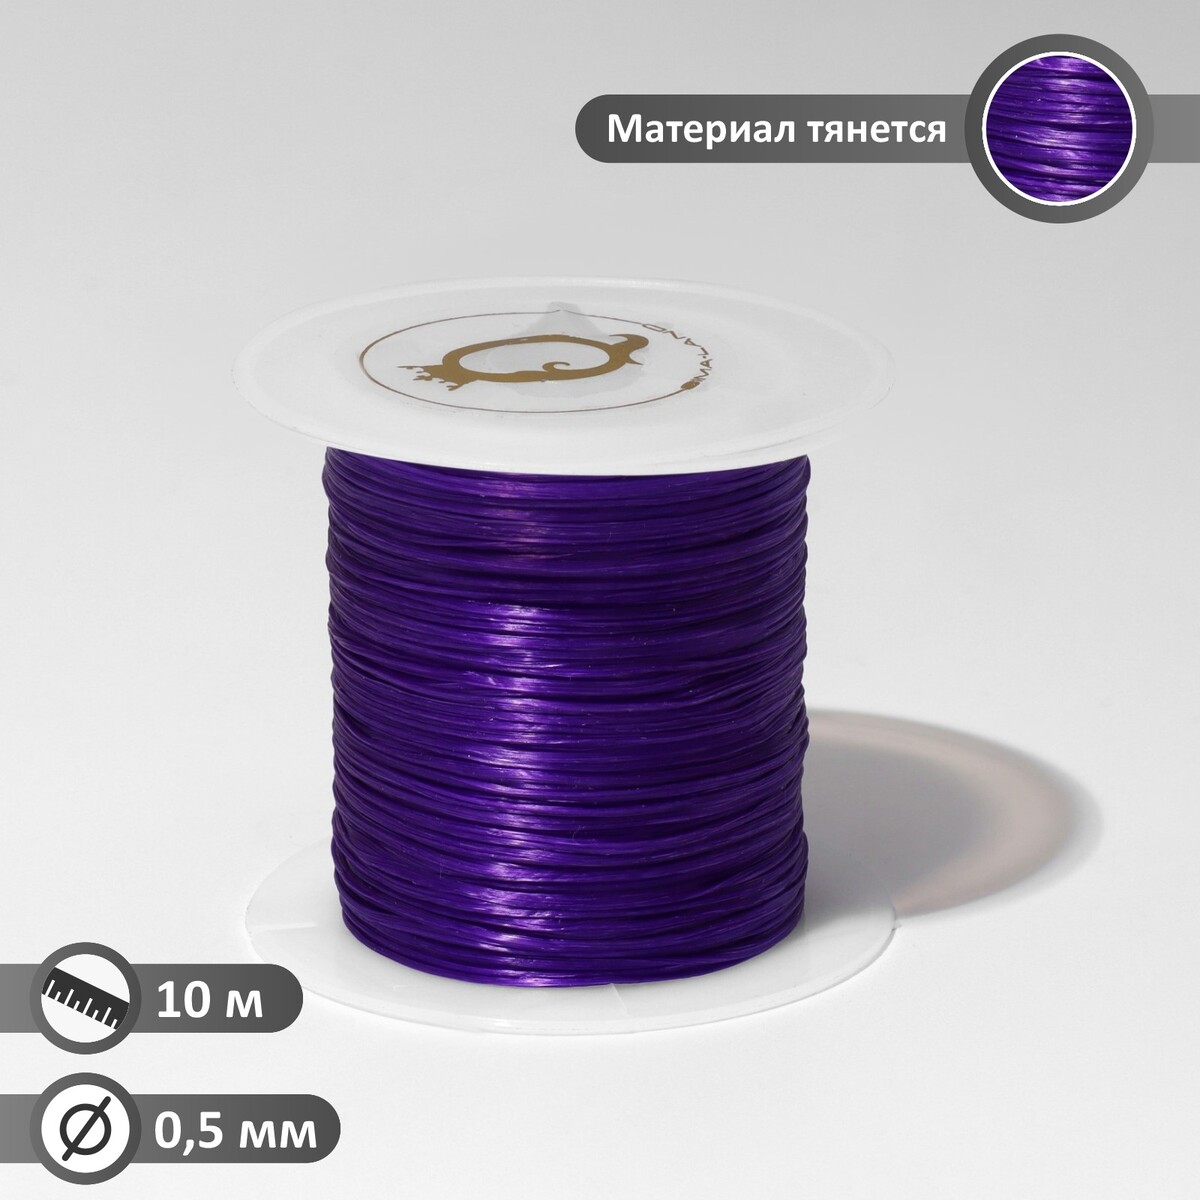 Нить силиконовая (резинка) d=0,5 мм, l=10 м (прочность 2250 денье), цвет фиолетовый нить силиконовая резинка d 0 5мм l 10м прочность 2250 денье